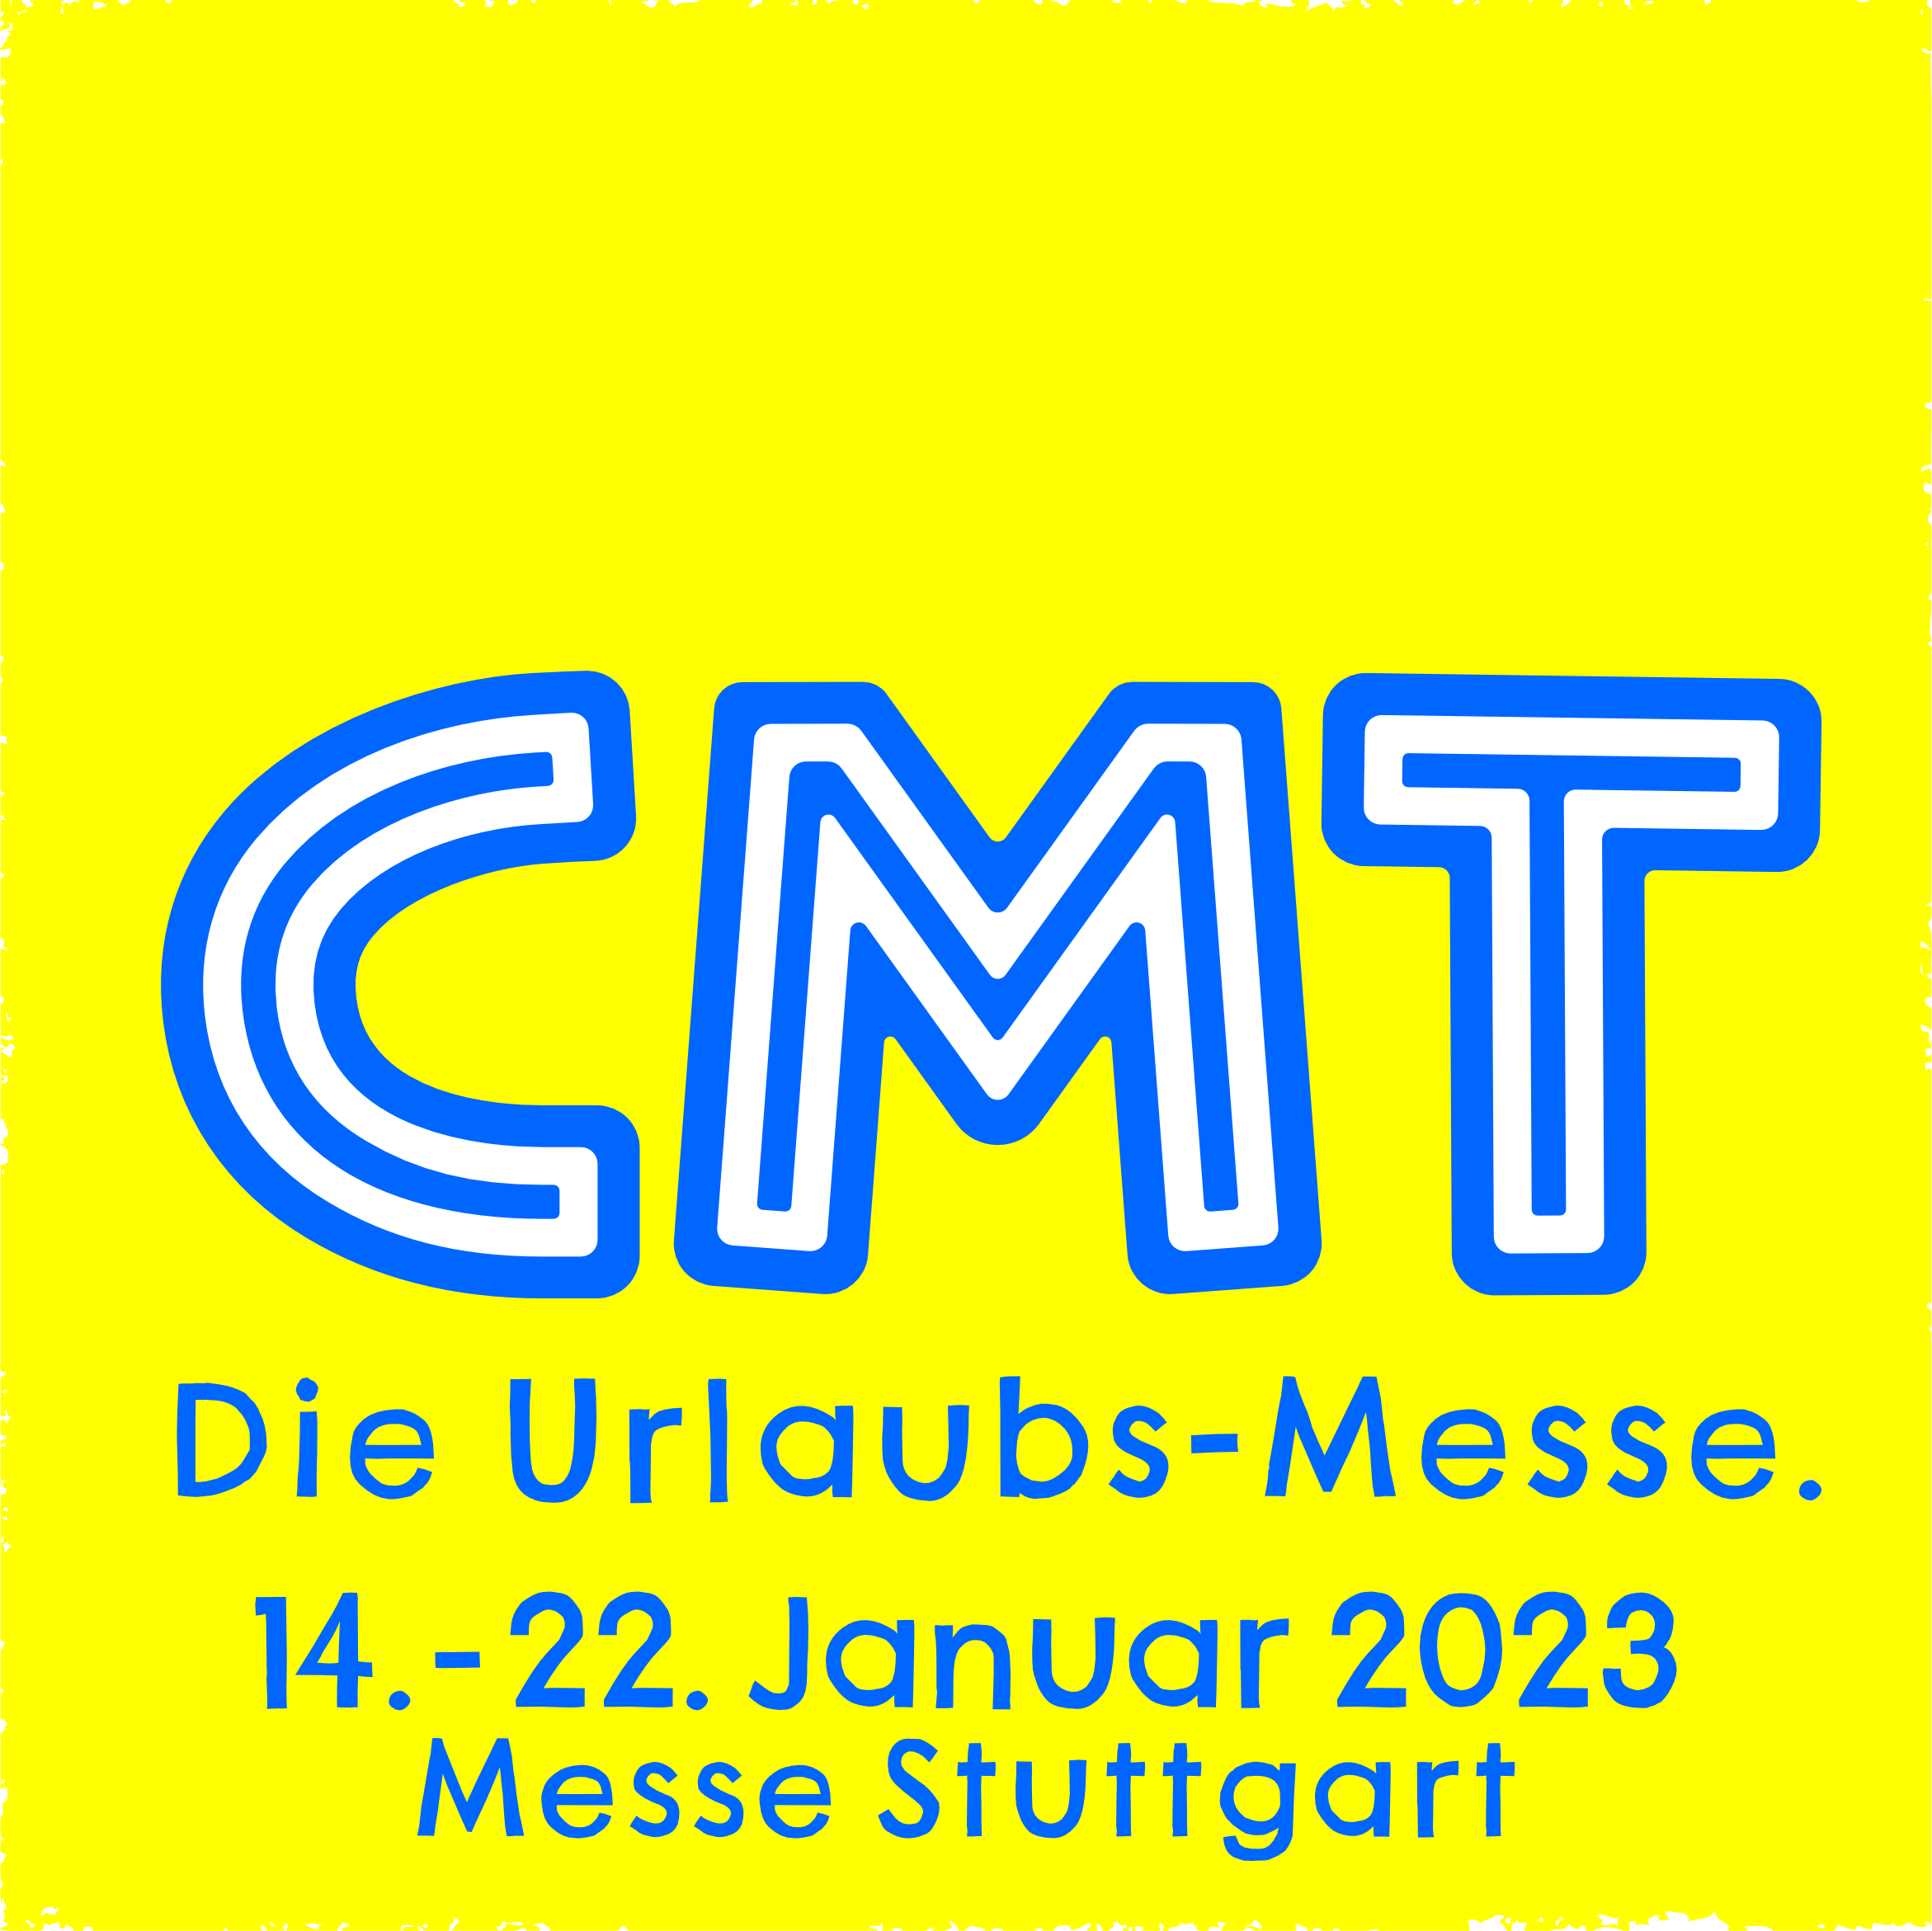 CMT Stuttgart vom 14. – 22.01.20